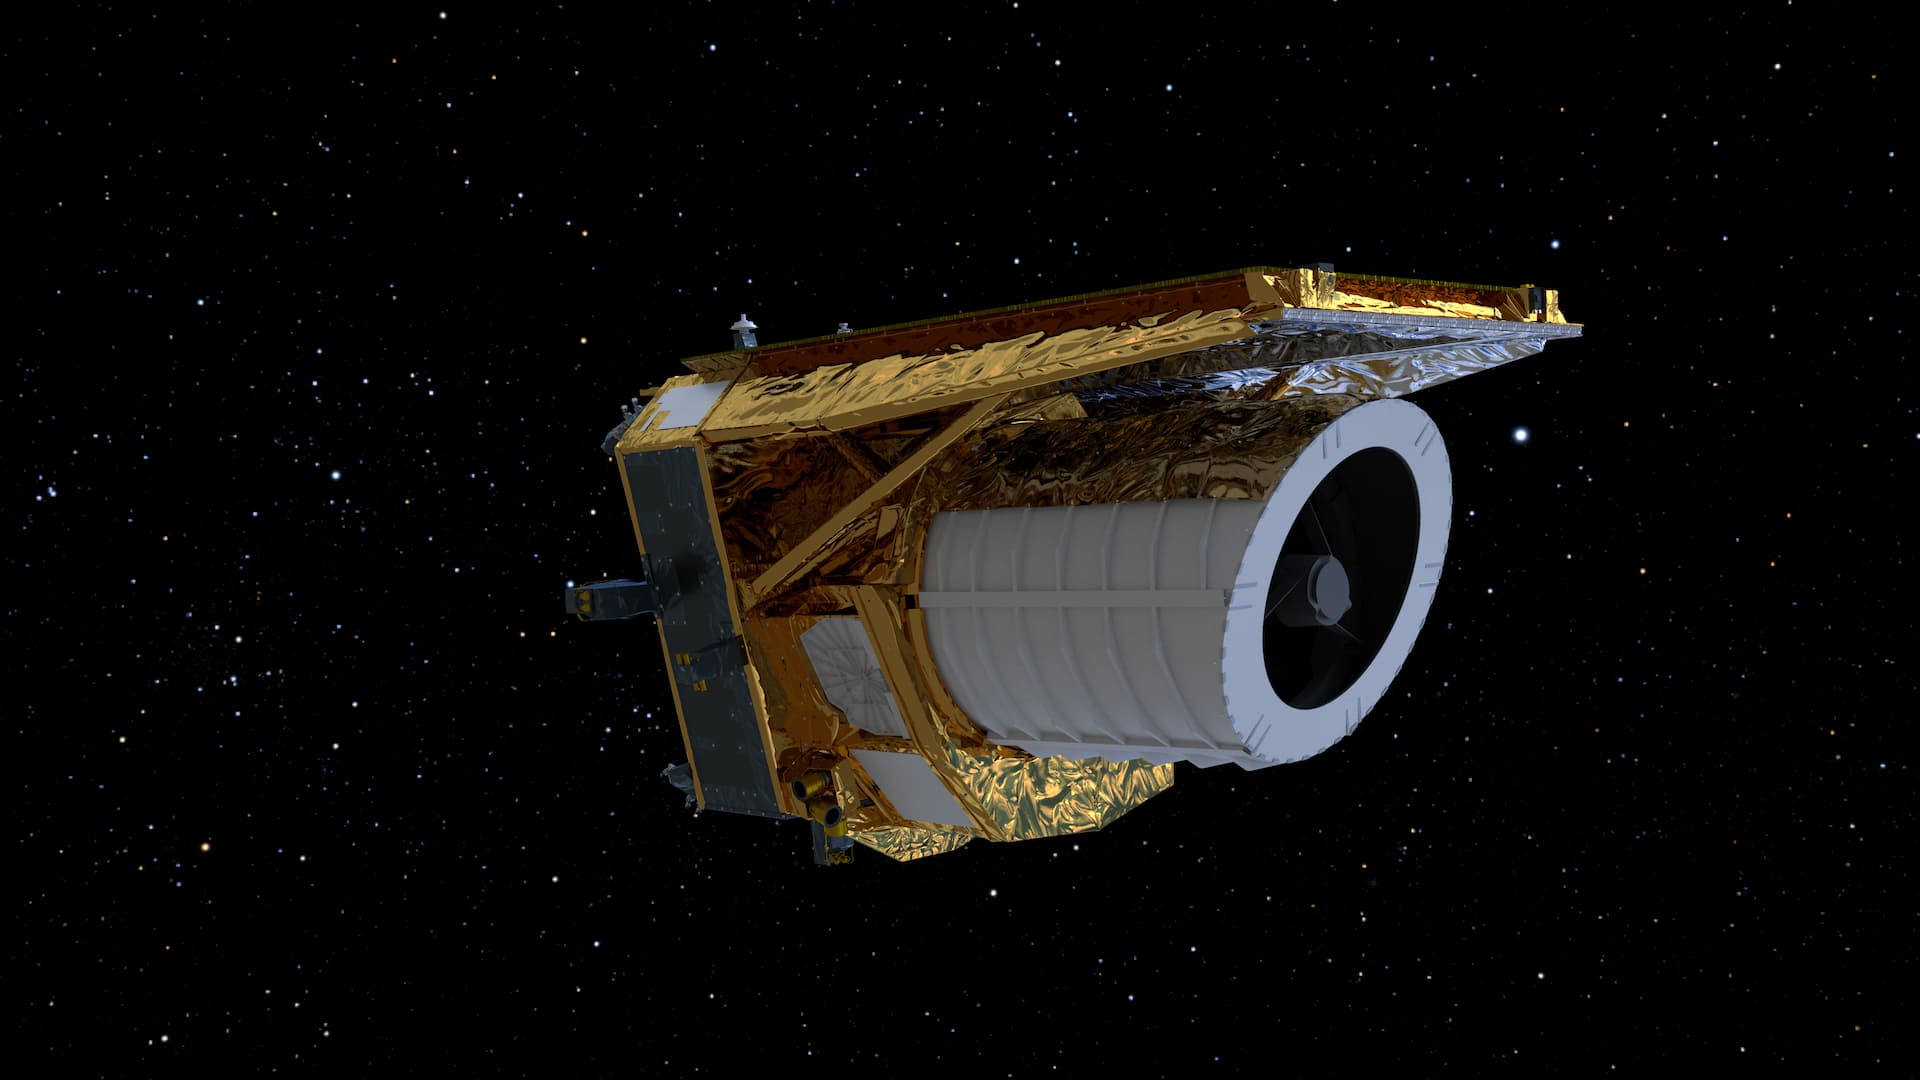 Prime spettacolari e dettagliate immagini dell’Universo inviate dal telescopio spaziale europeo Euclid